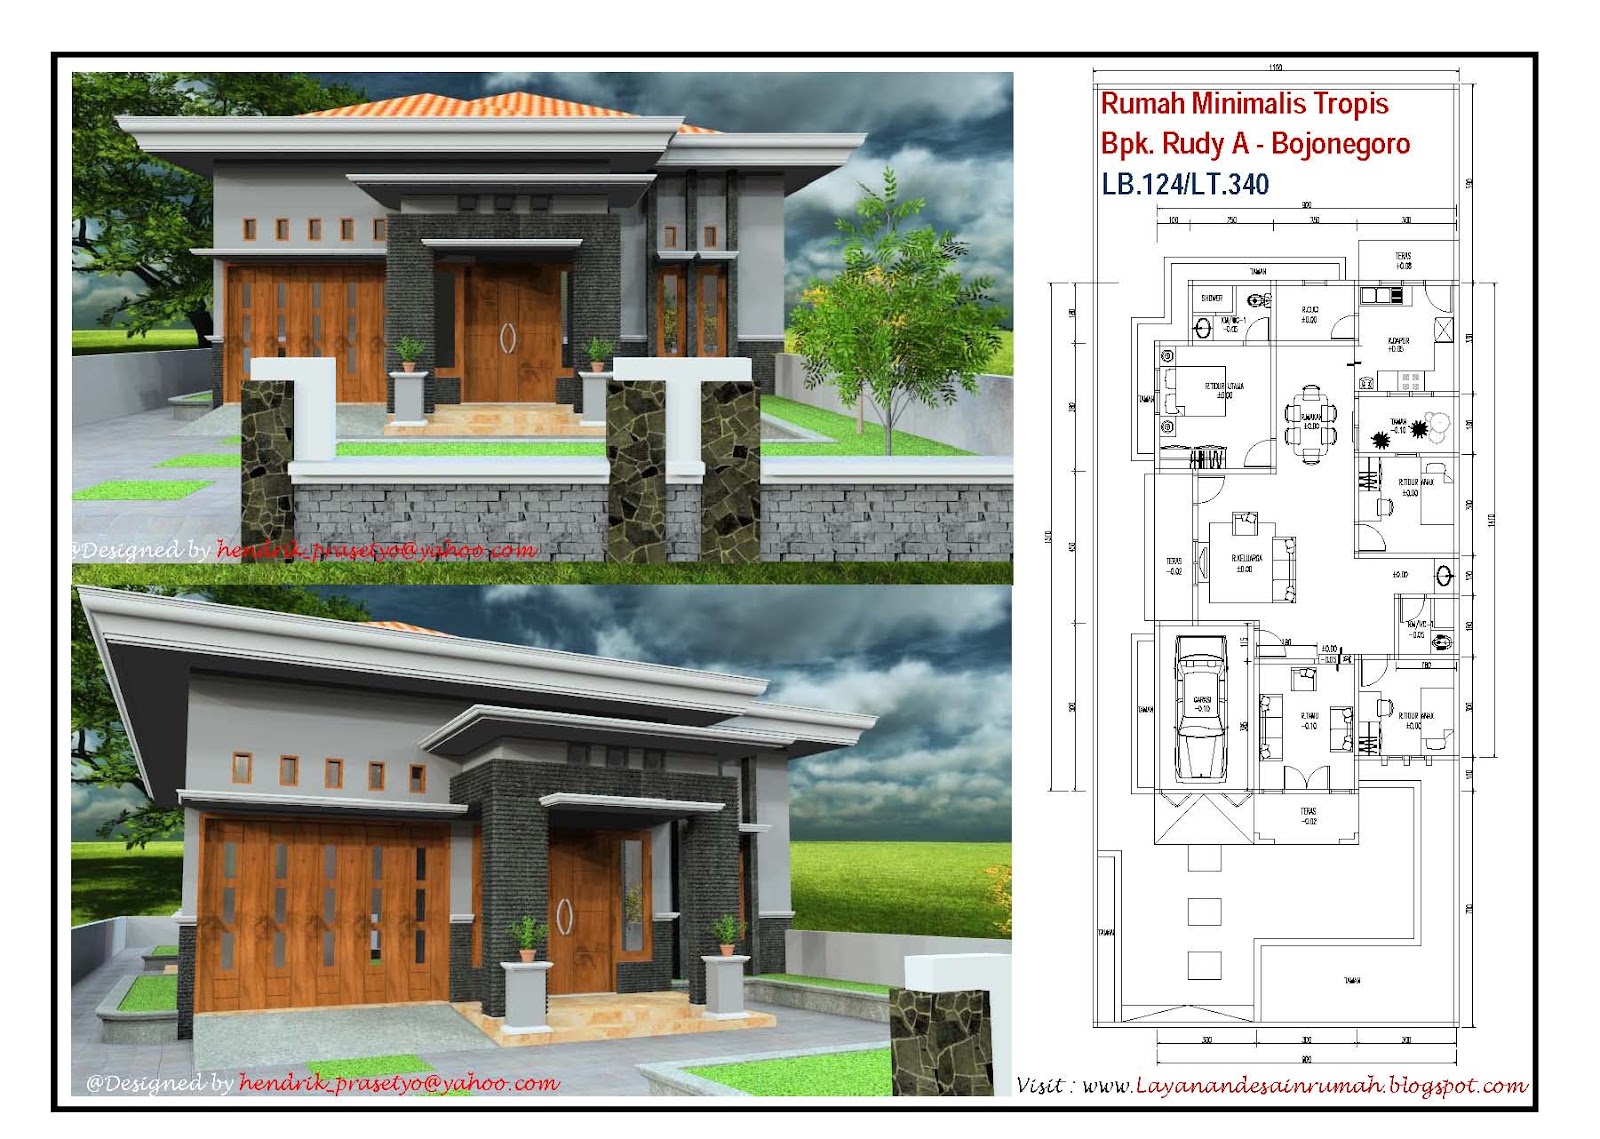 Layanan Jasa Desain Rumah Rumah Minimalis Tropis Bpk Rudy A